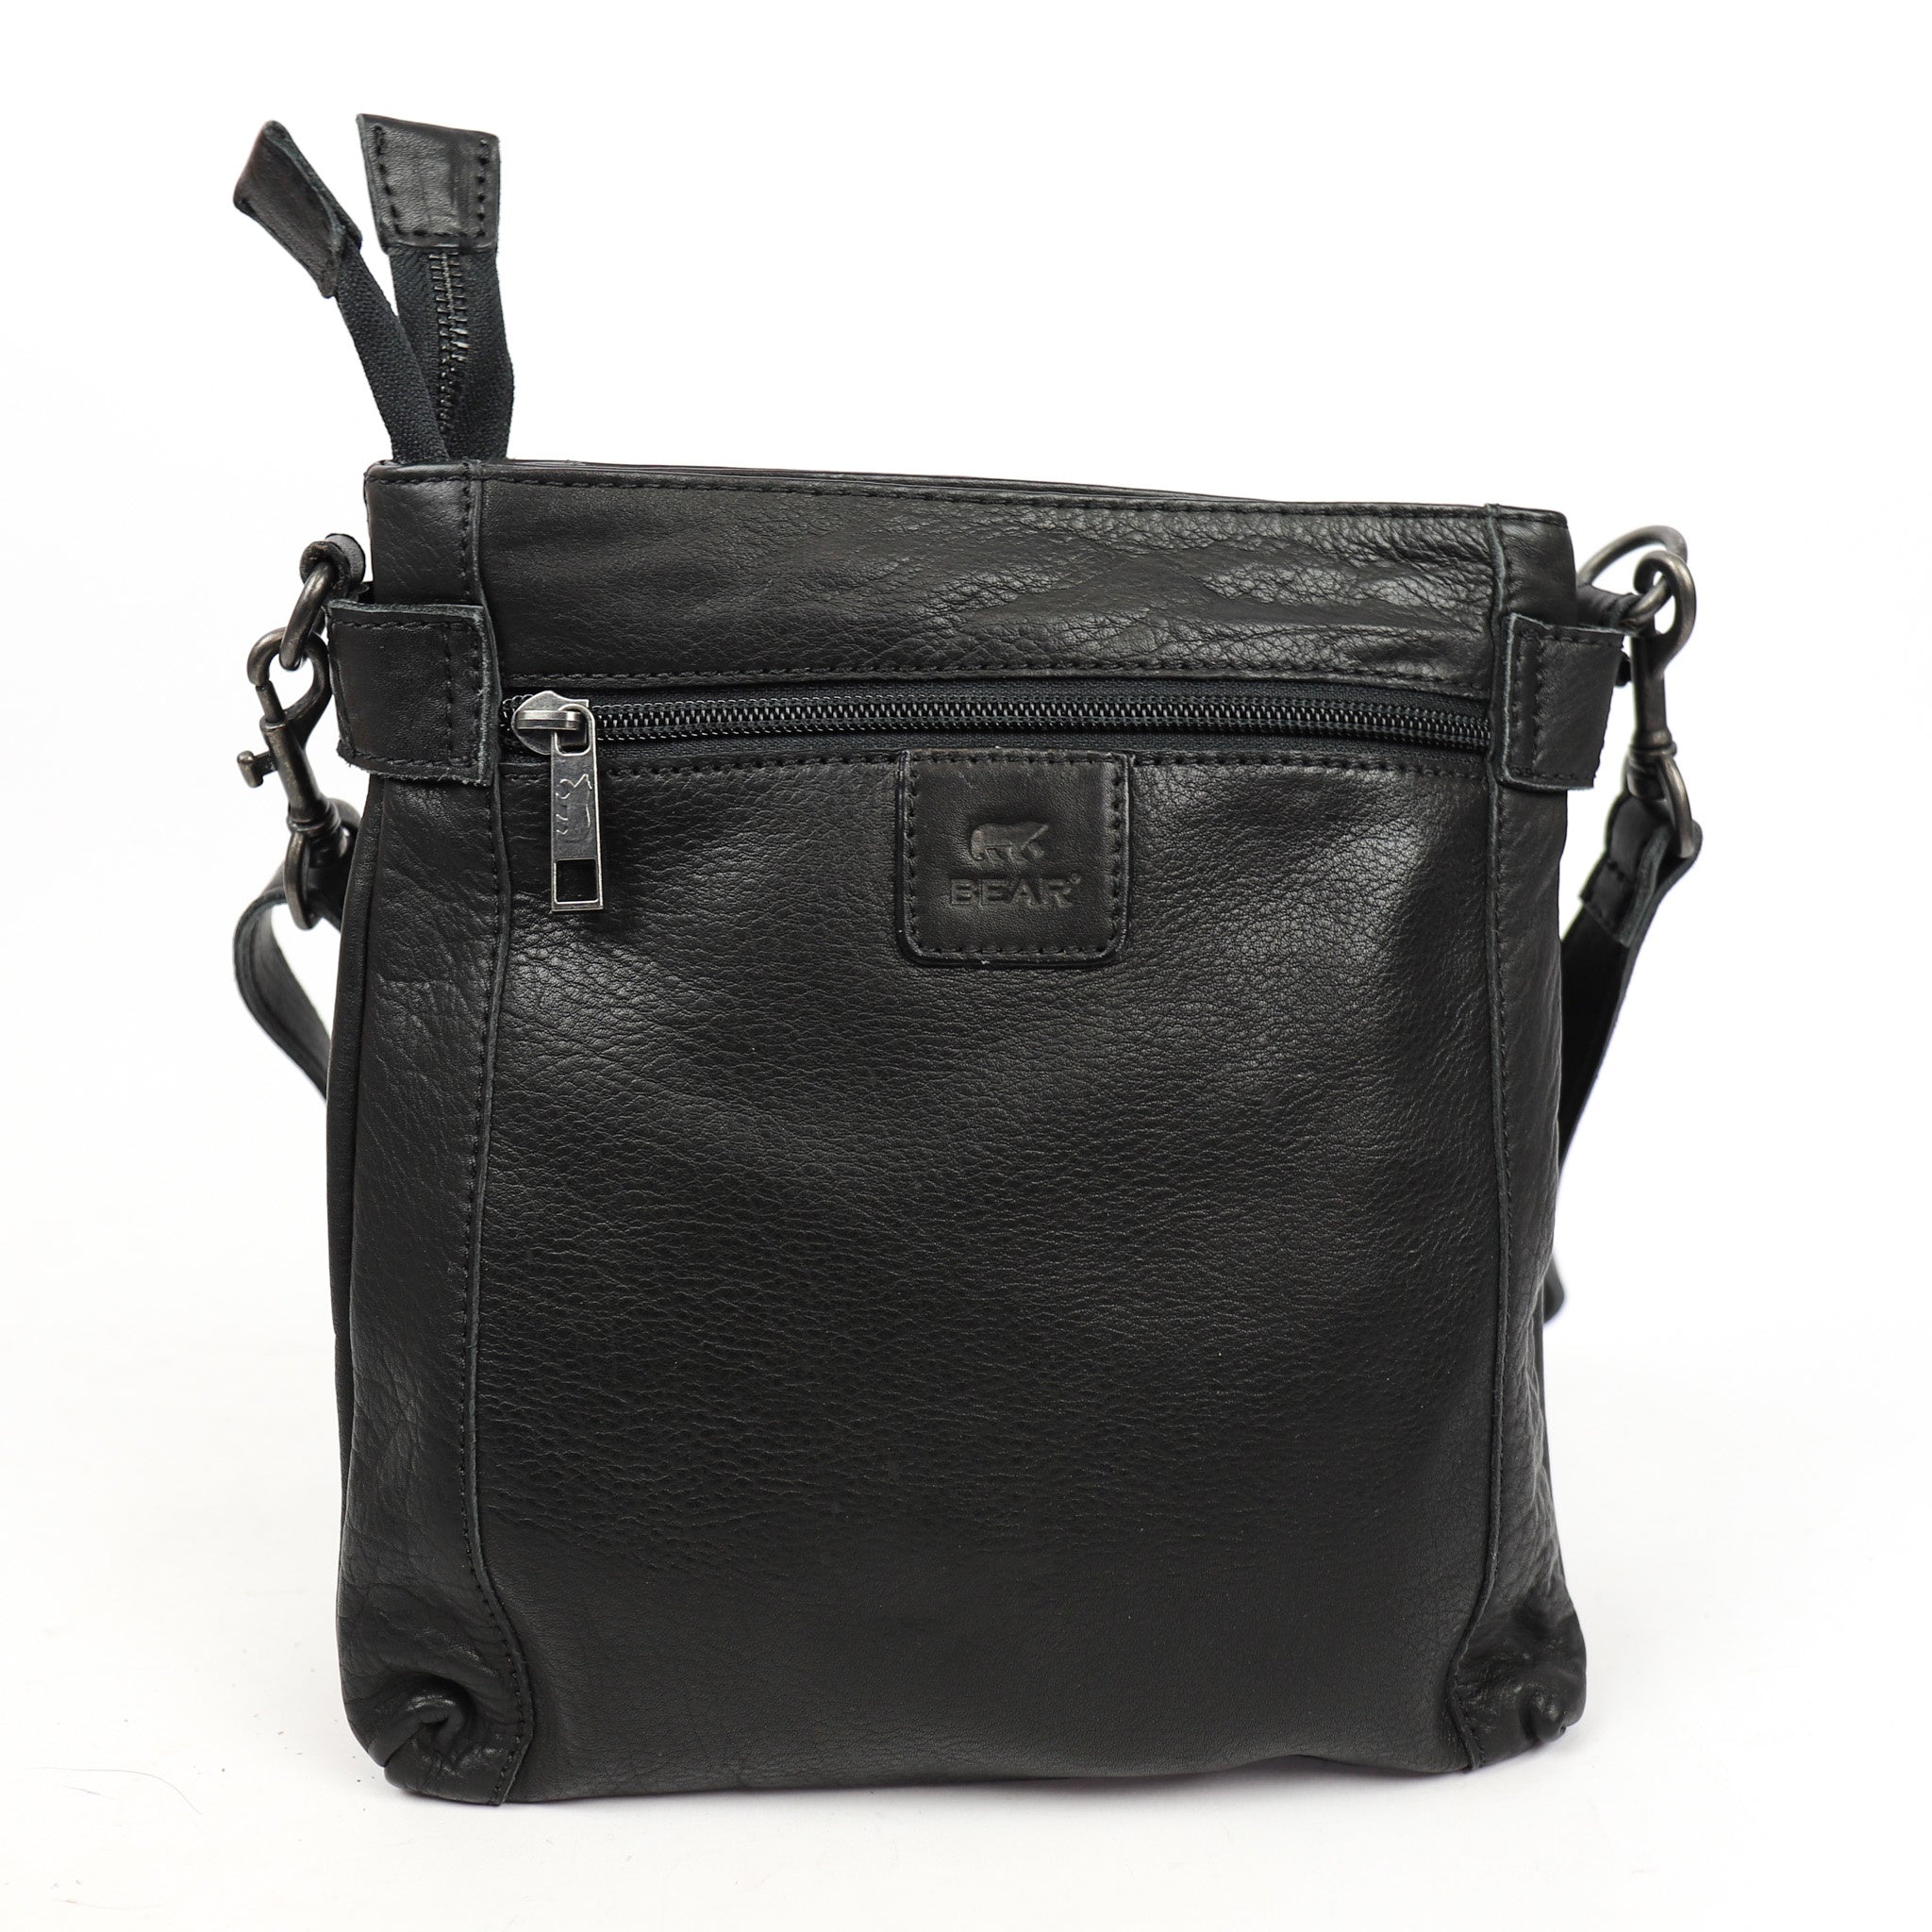 Shoulder bag 'Teppie' black - CP 2220